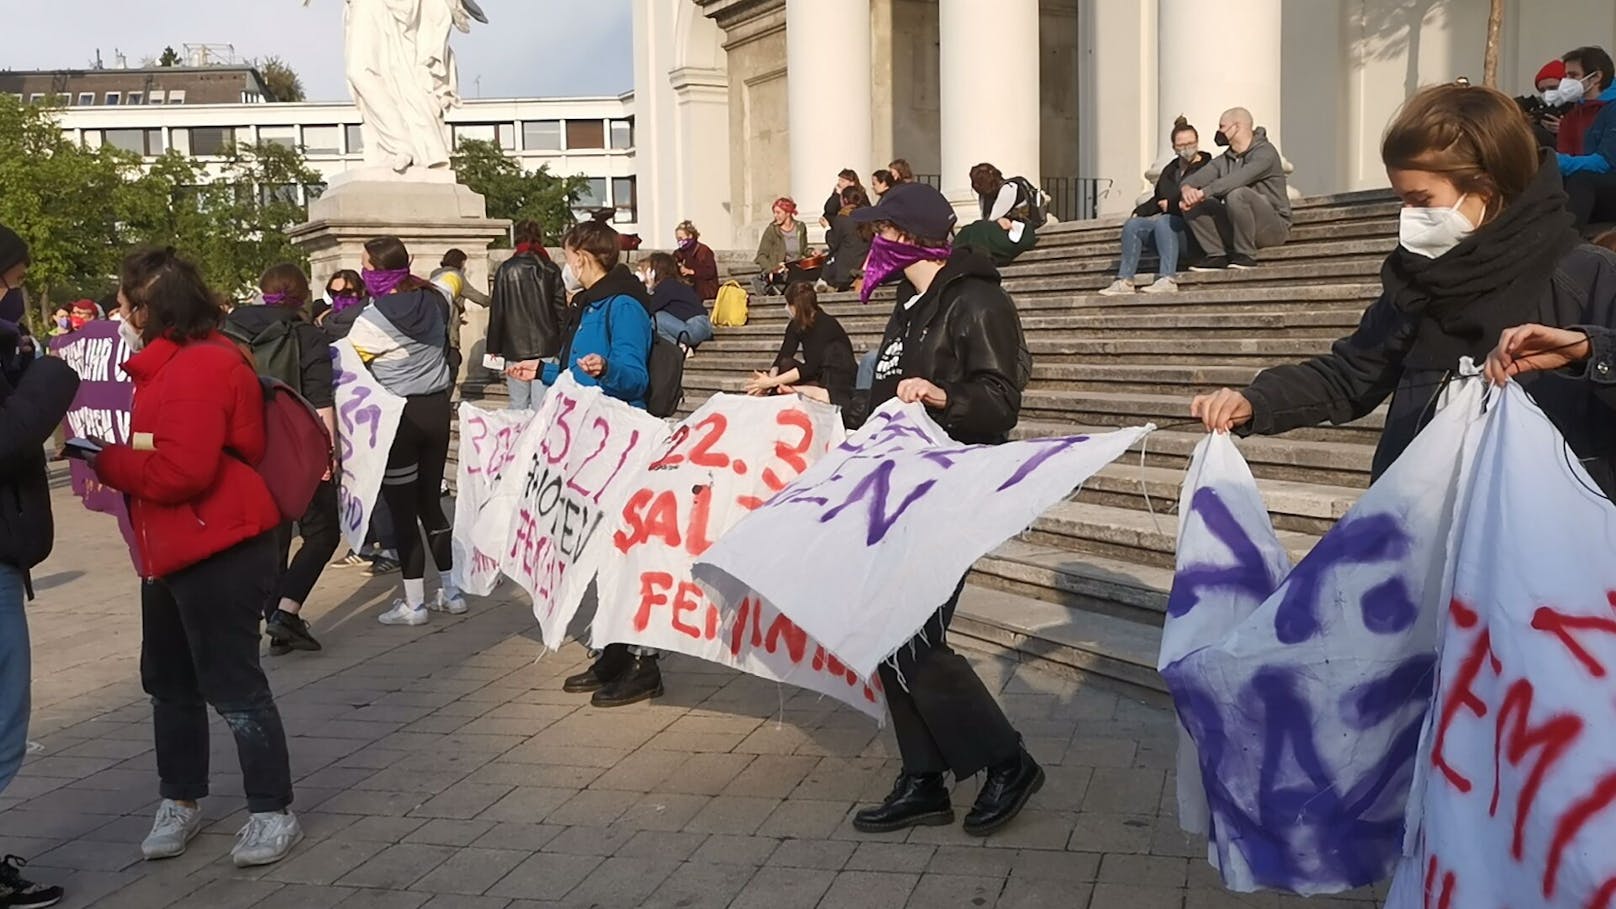 Am Montag (03.05.2021) fand am Karlsplatz eine Demonstration gegen Frauenmorde statt.